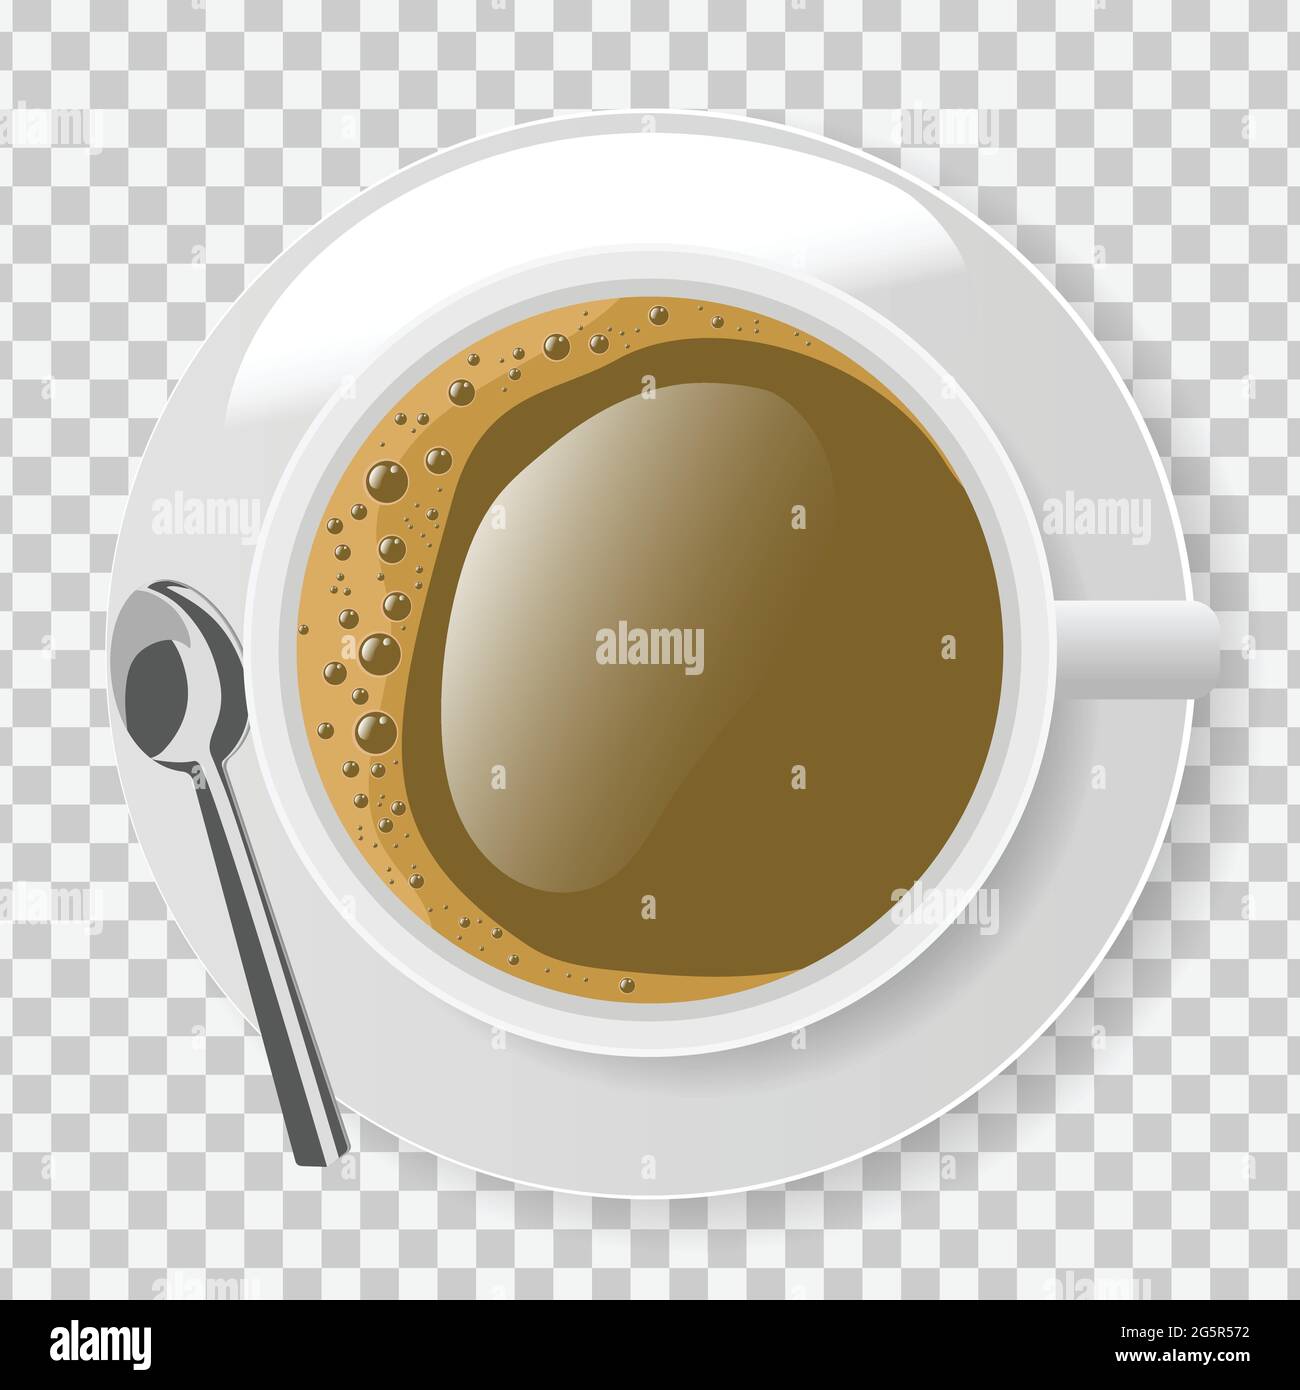 Vue de dessus d'une tasse à café blanche avec assiette et cuillère sur fond transparent Illustration de Vecteur